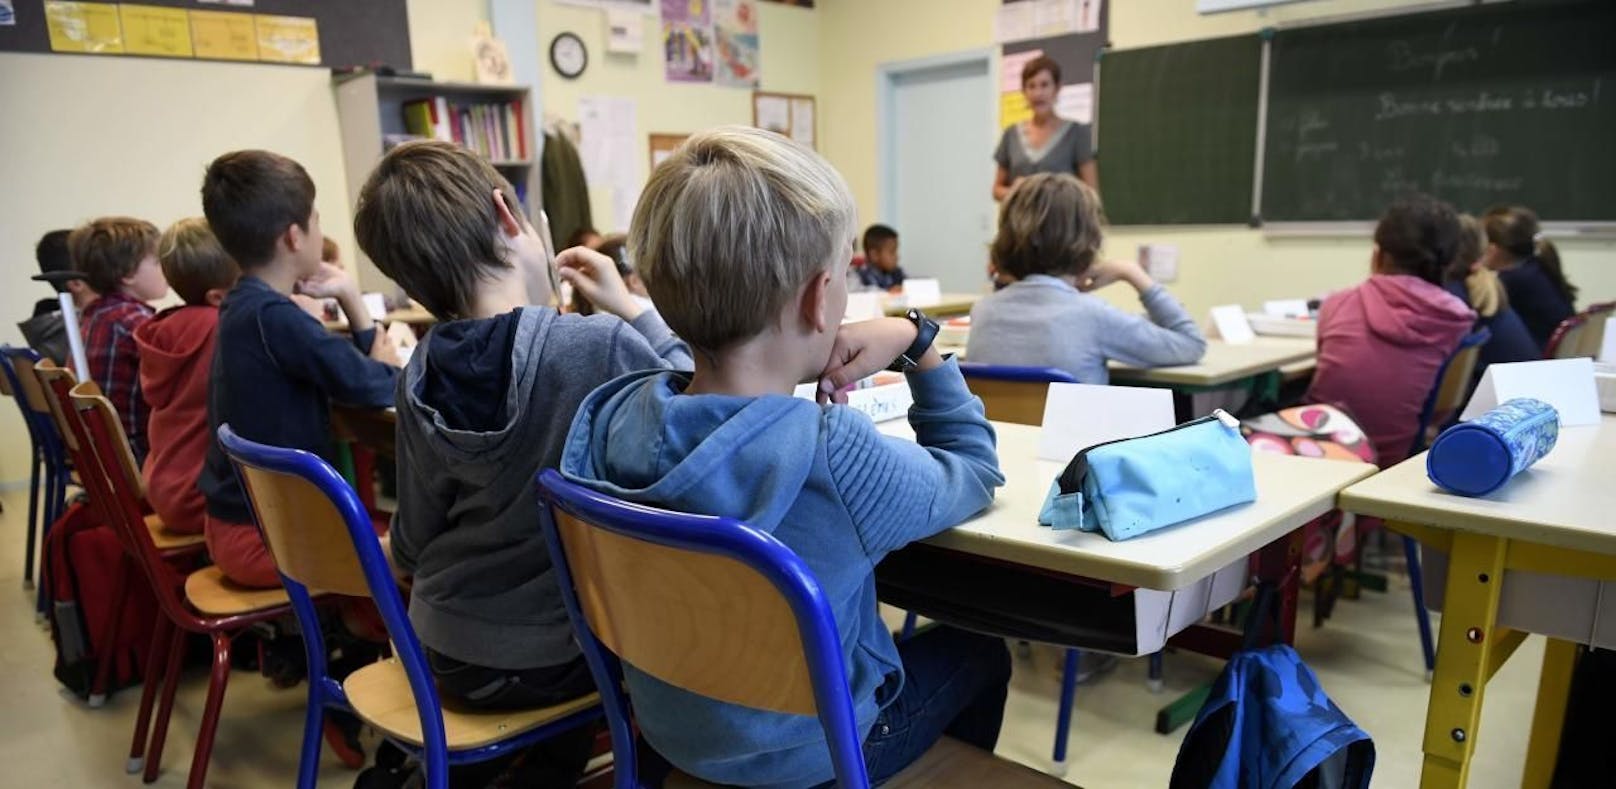 Viele Schüler in Österreich fühlen sich vom Unterricht überfordert. (Symbolbild)